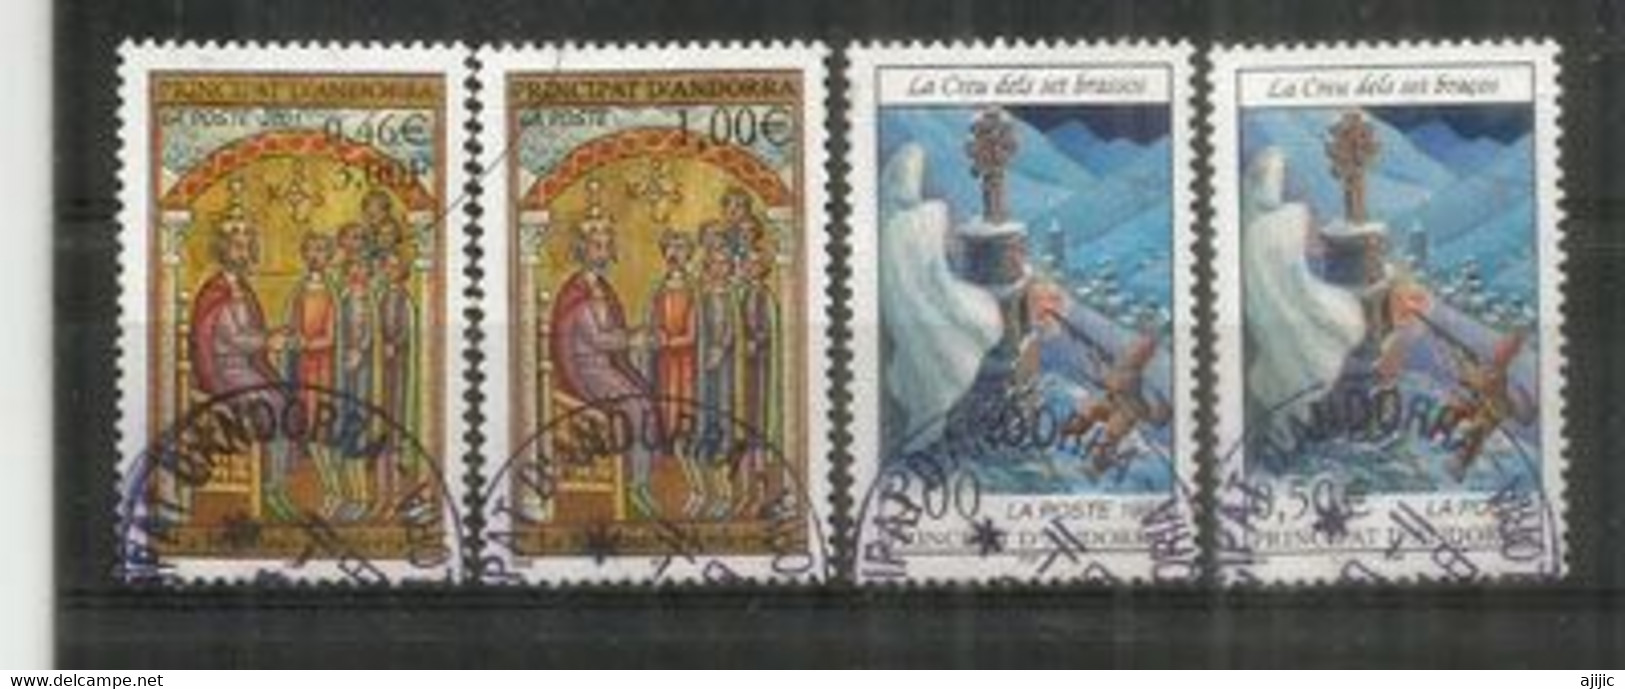 Les Contes:La Croix Aux Sept Bras Et La Fondation D'Andorre.  4 T-p Oblit. 1 ère Qualité, Diff.denominations FF & € Euro - Used Stamps